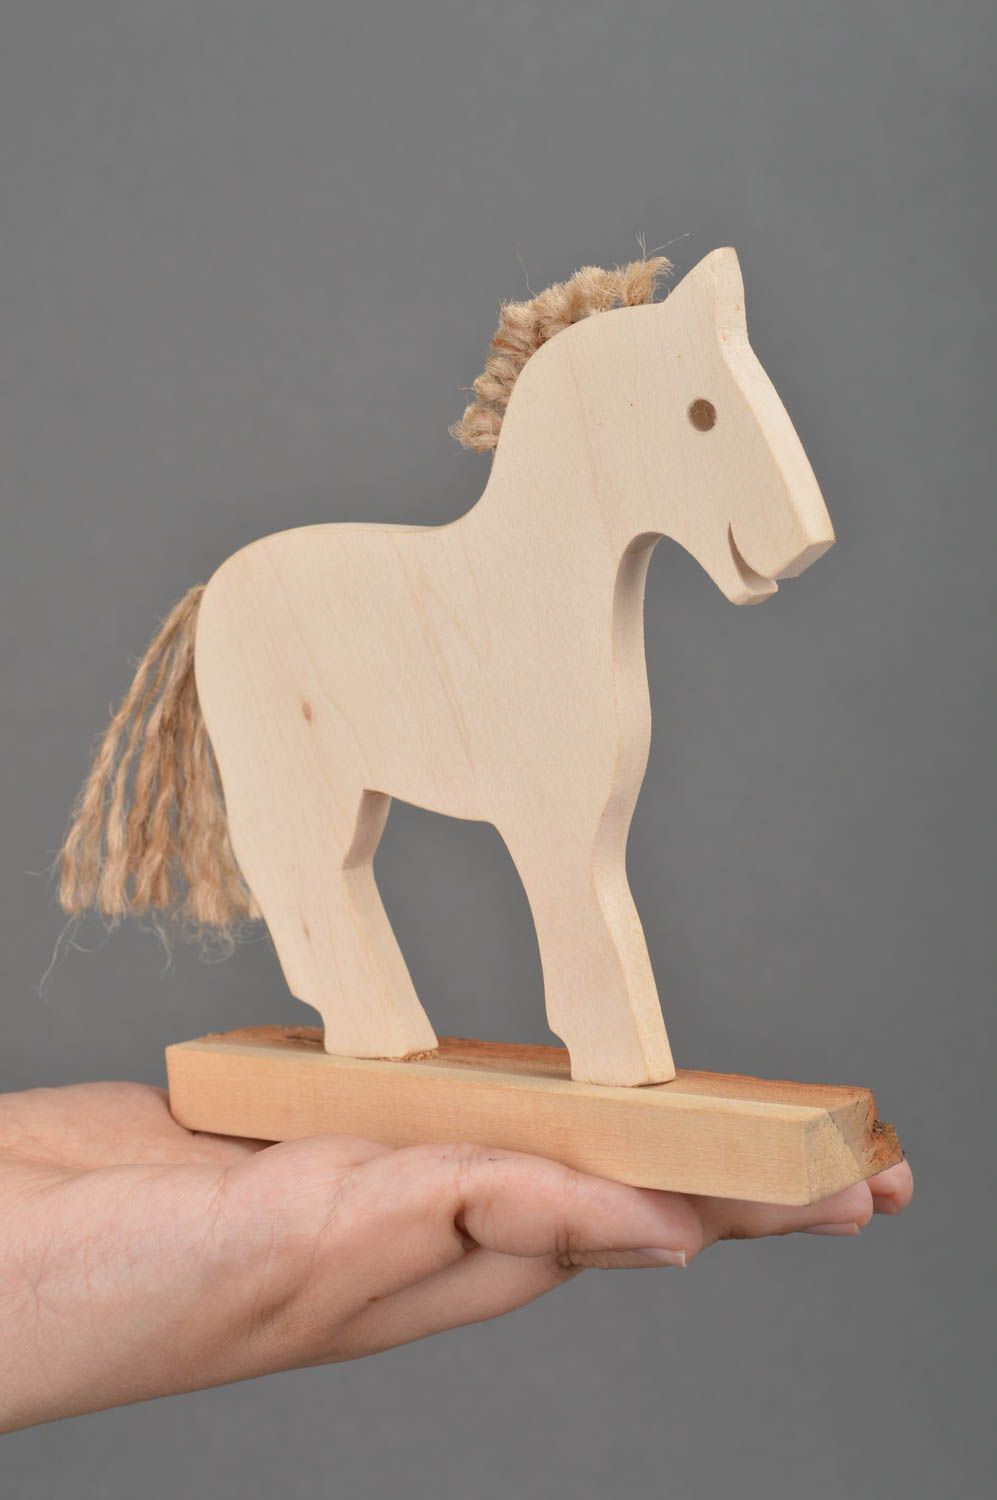 Juguete de madera hecho a mano para niños o para decoración de interior caballo foto 5